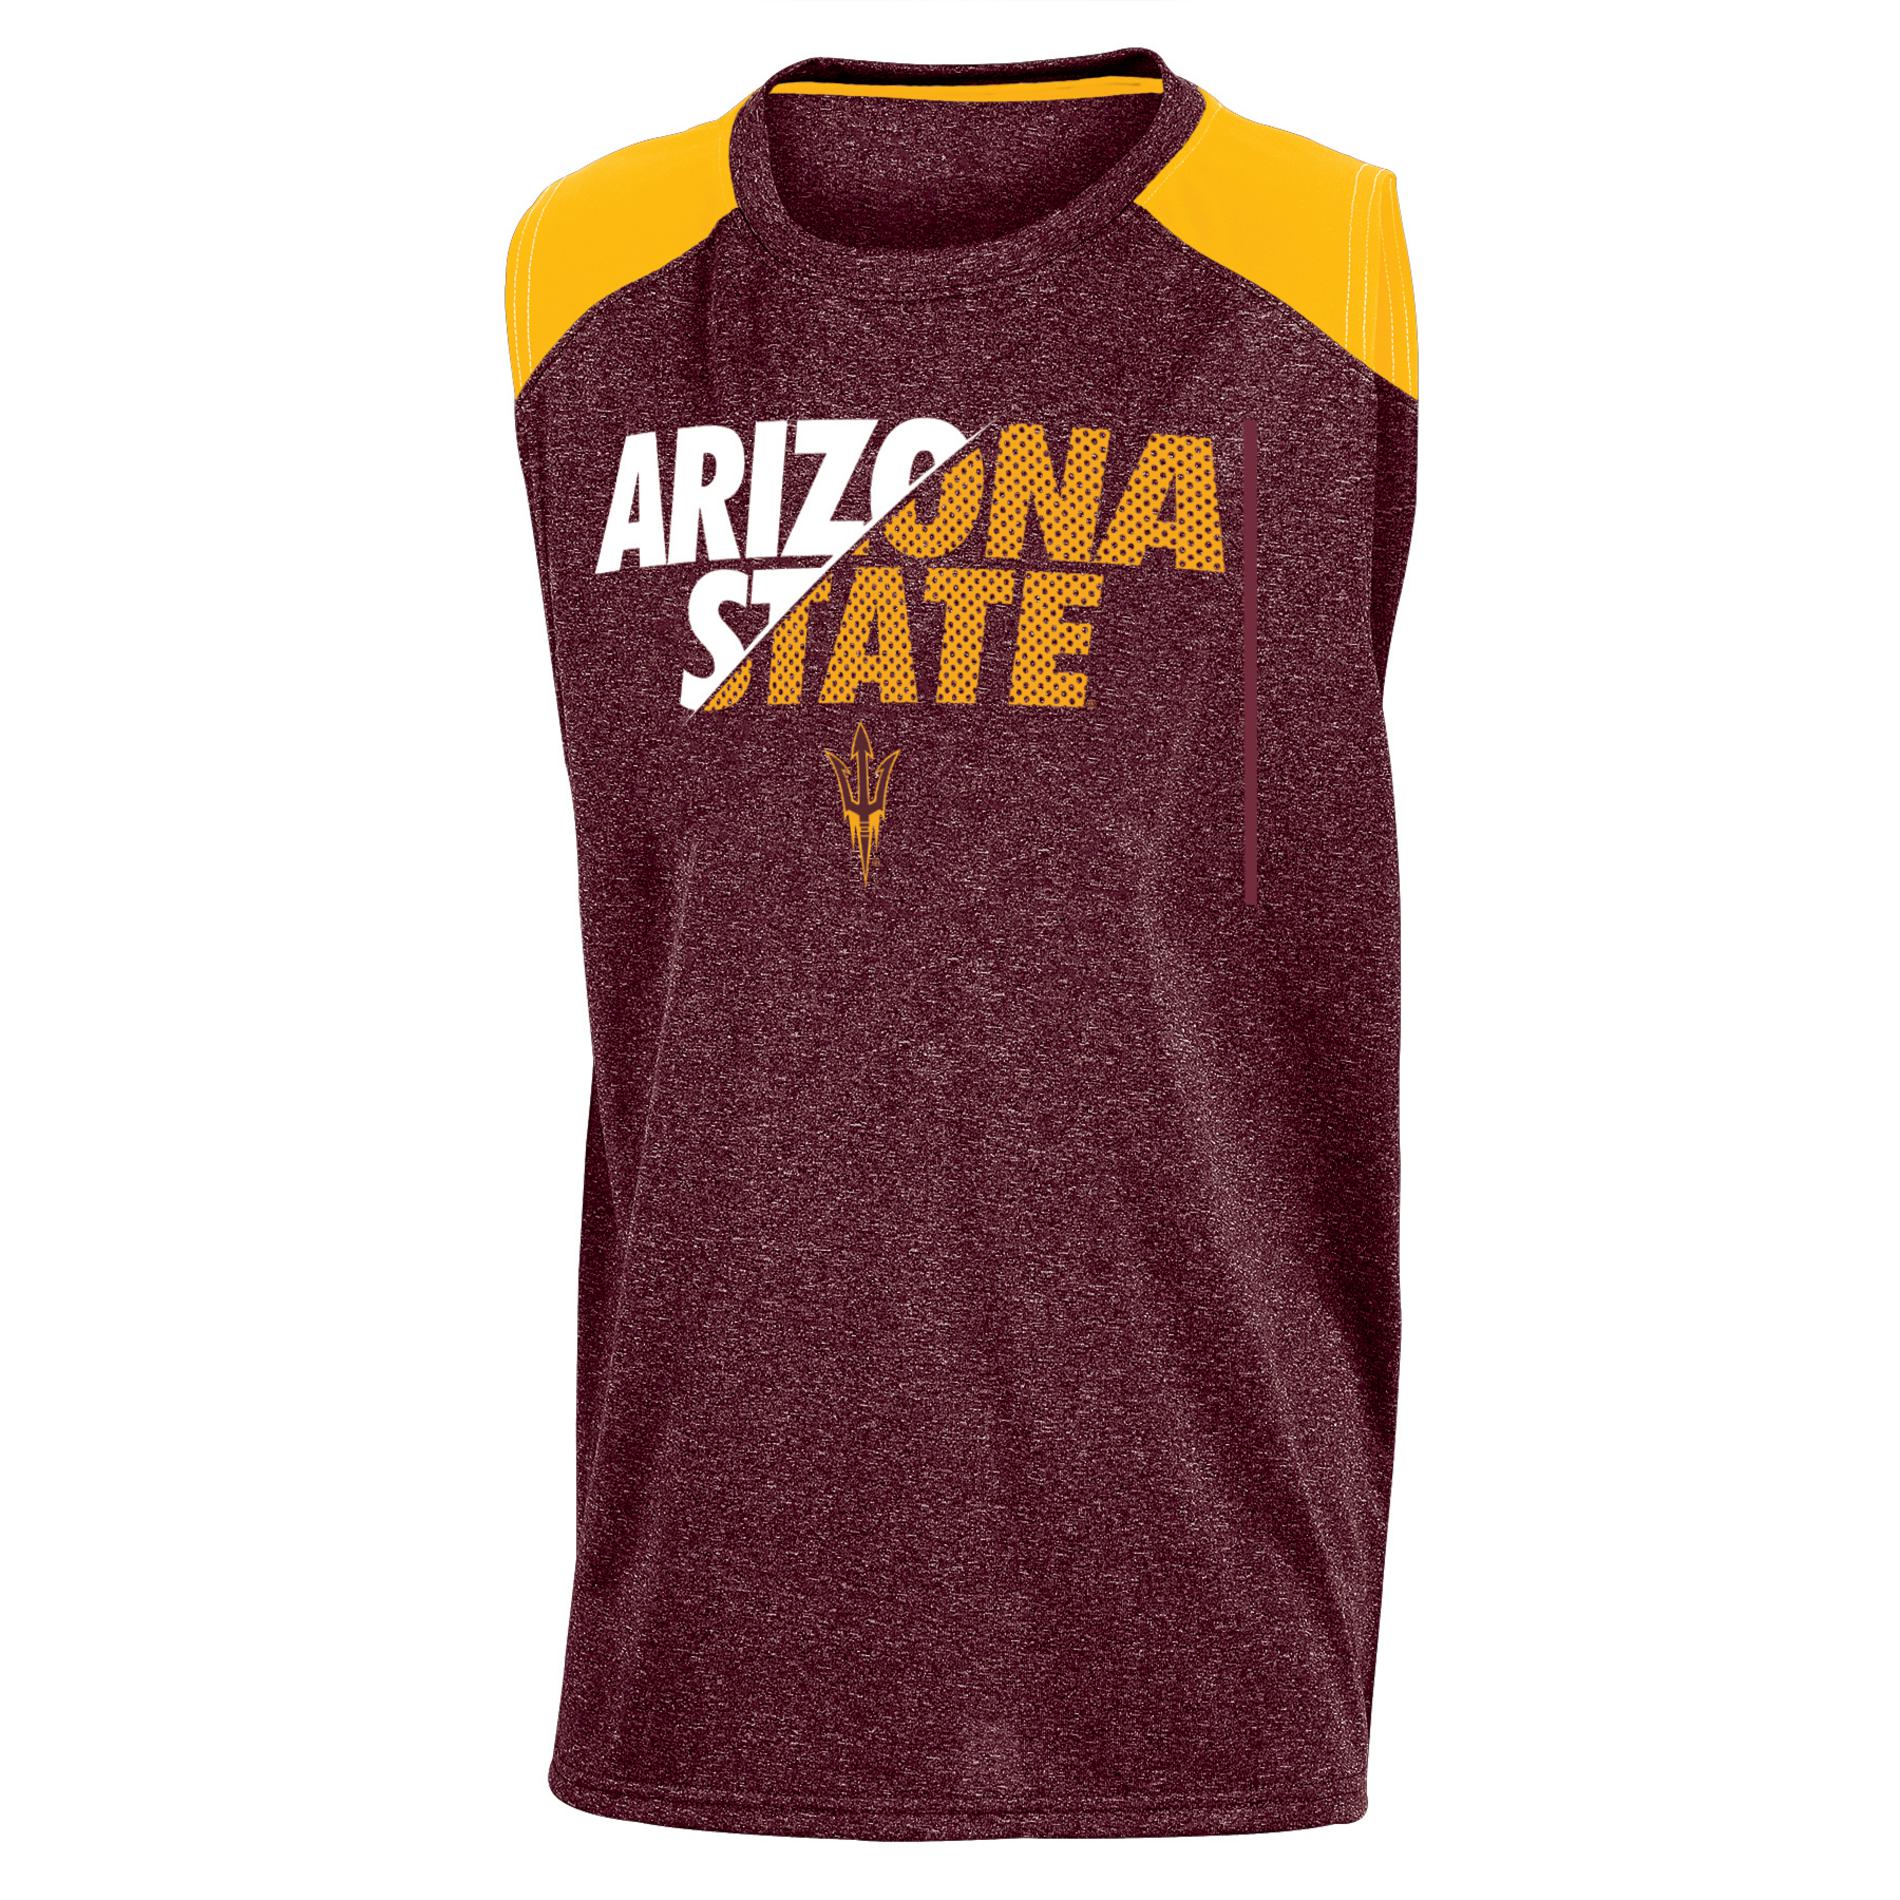 NCAA Boys' Muscle Shirt - Arizona State Sun Devils